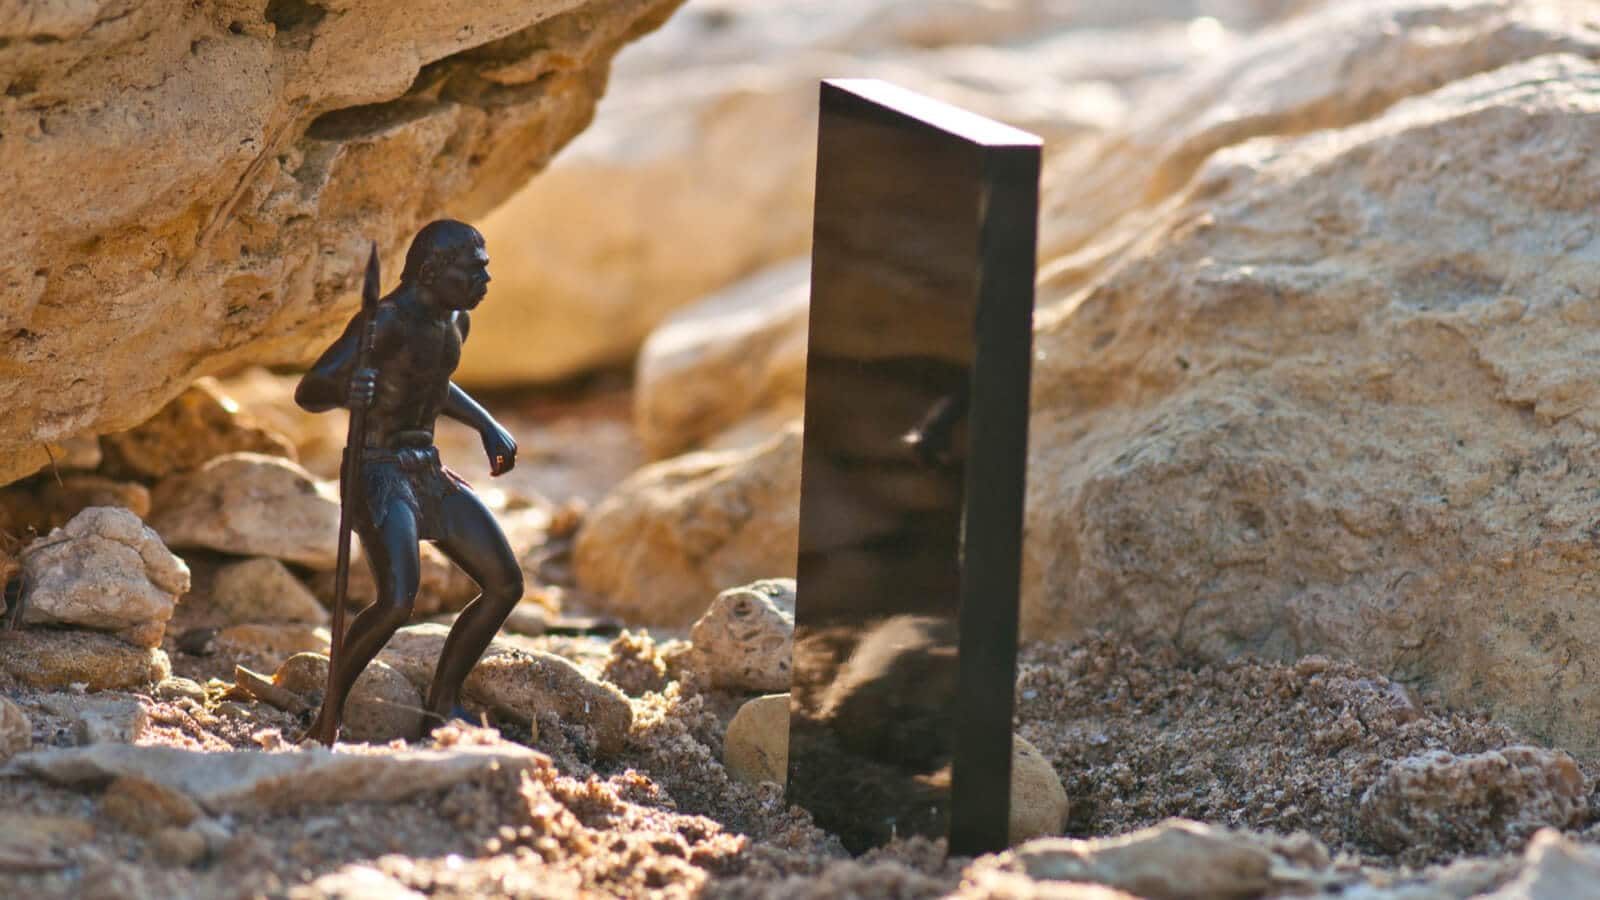 Monolith steht vor Felsen in Utah und löst viele Memes aus